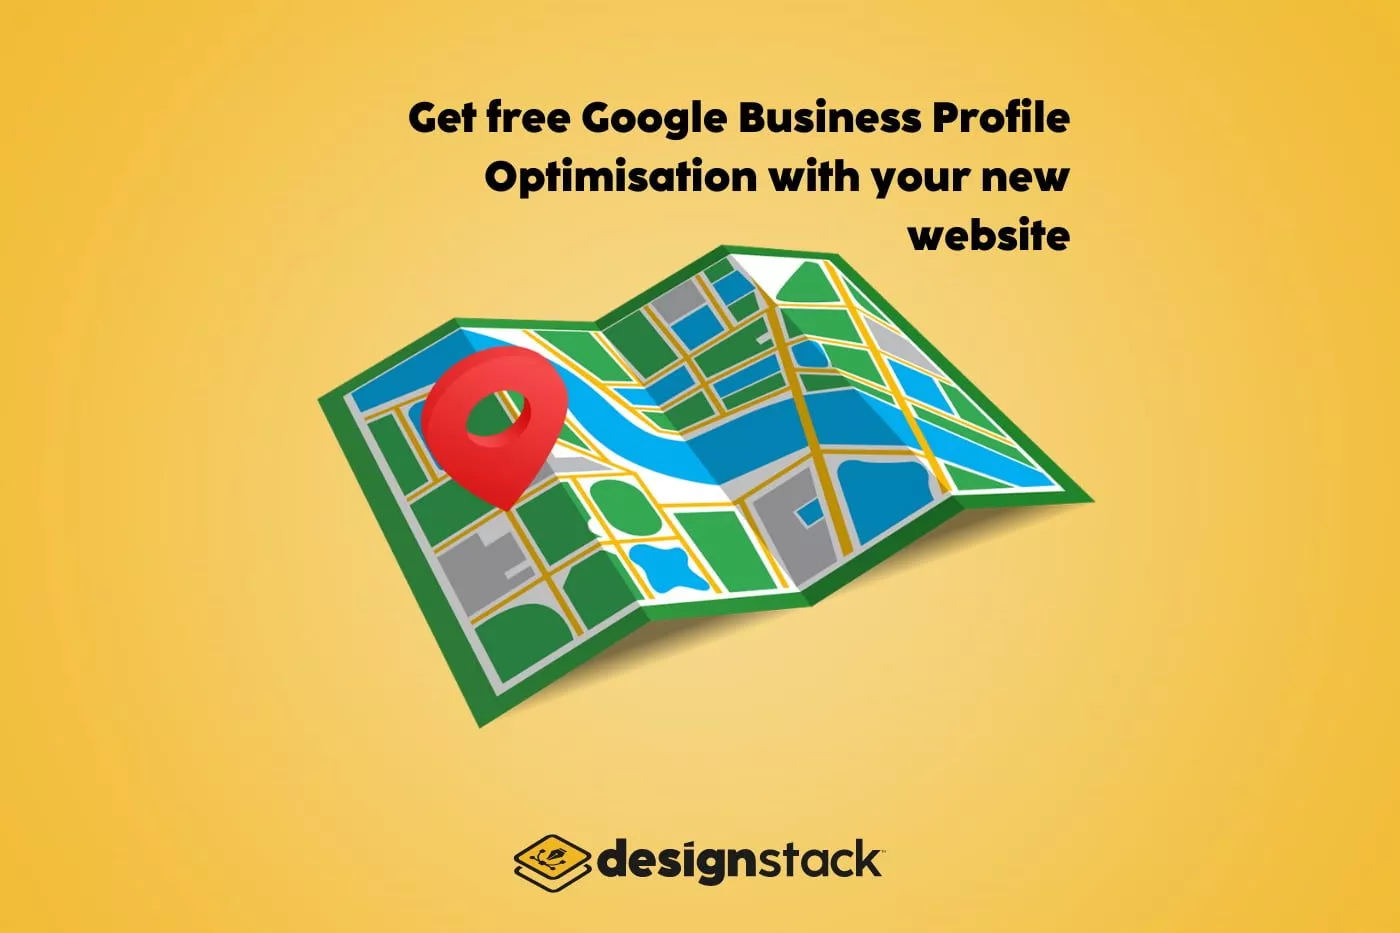 DesignStack Google Business Profile Offer